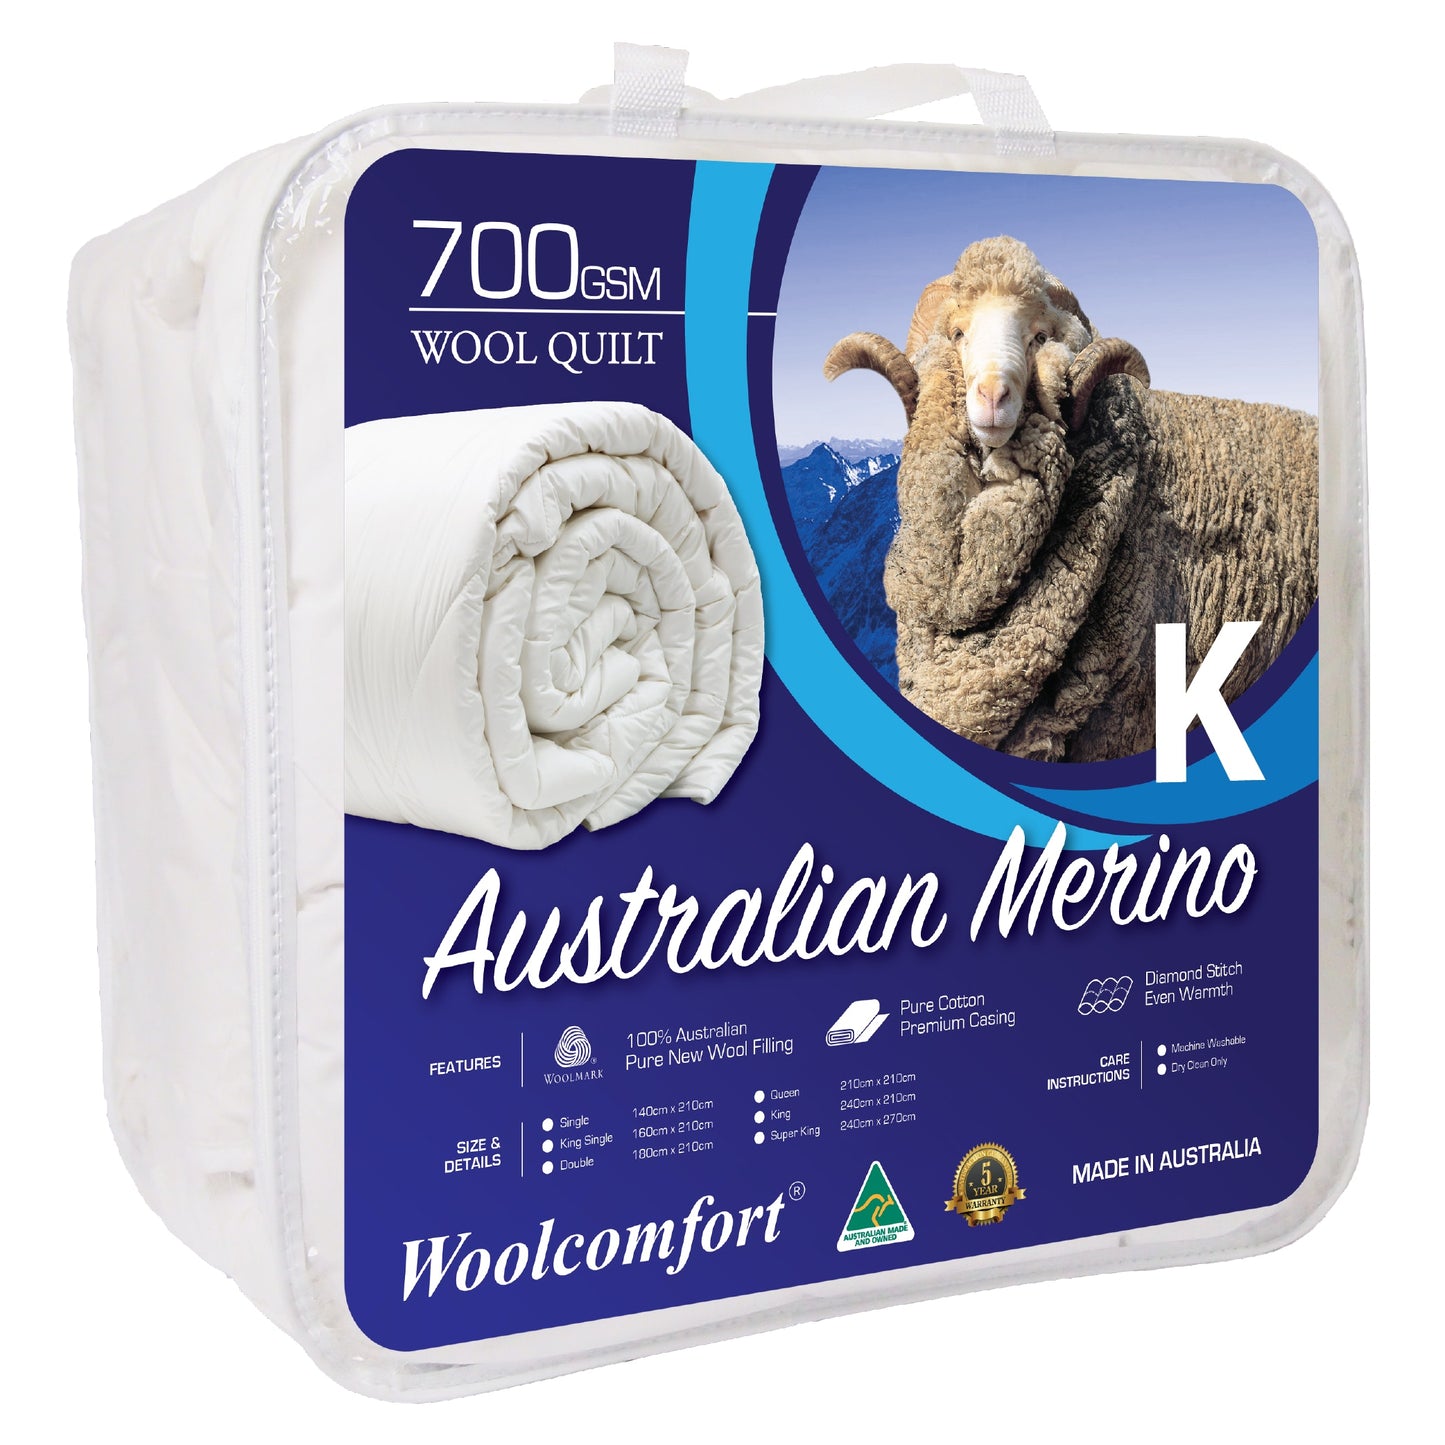 Woolcomfort Aus Made Merino Wool Quilt 700GSM 240x210cm King Size